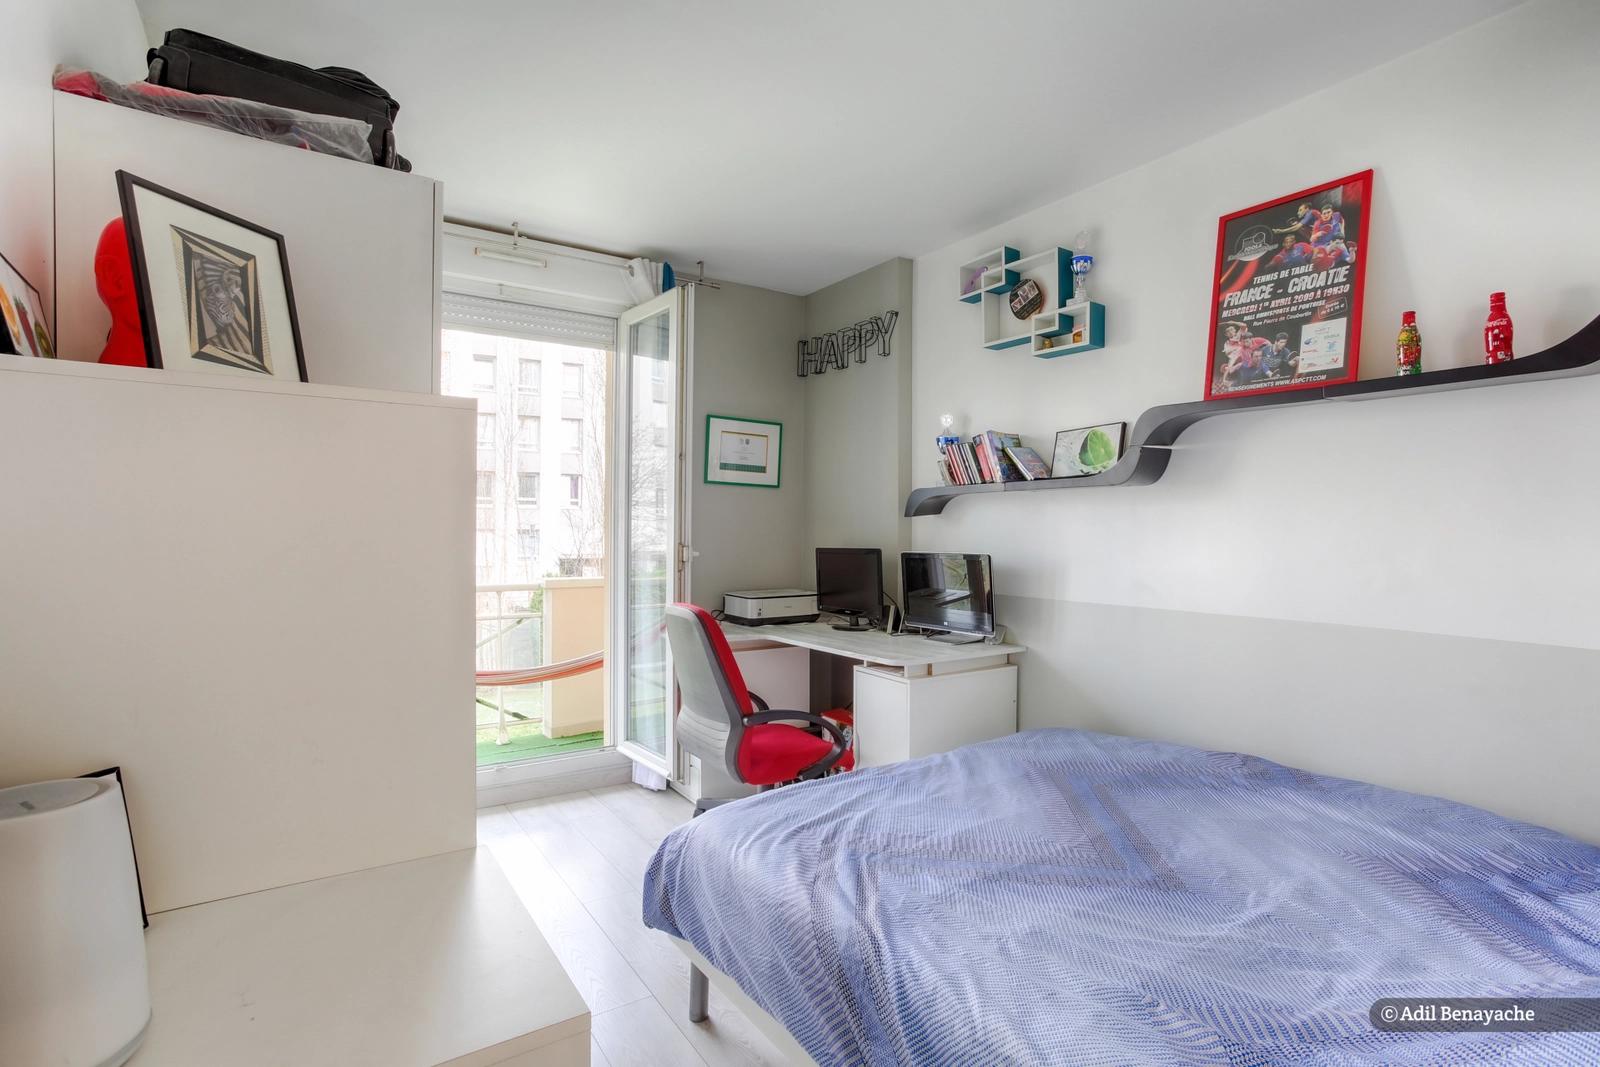 Dormitorio dentro Un moderno capullo entre Disney y París - 5